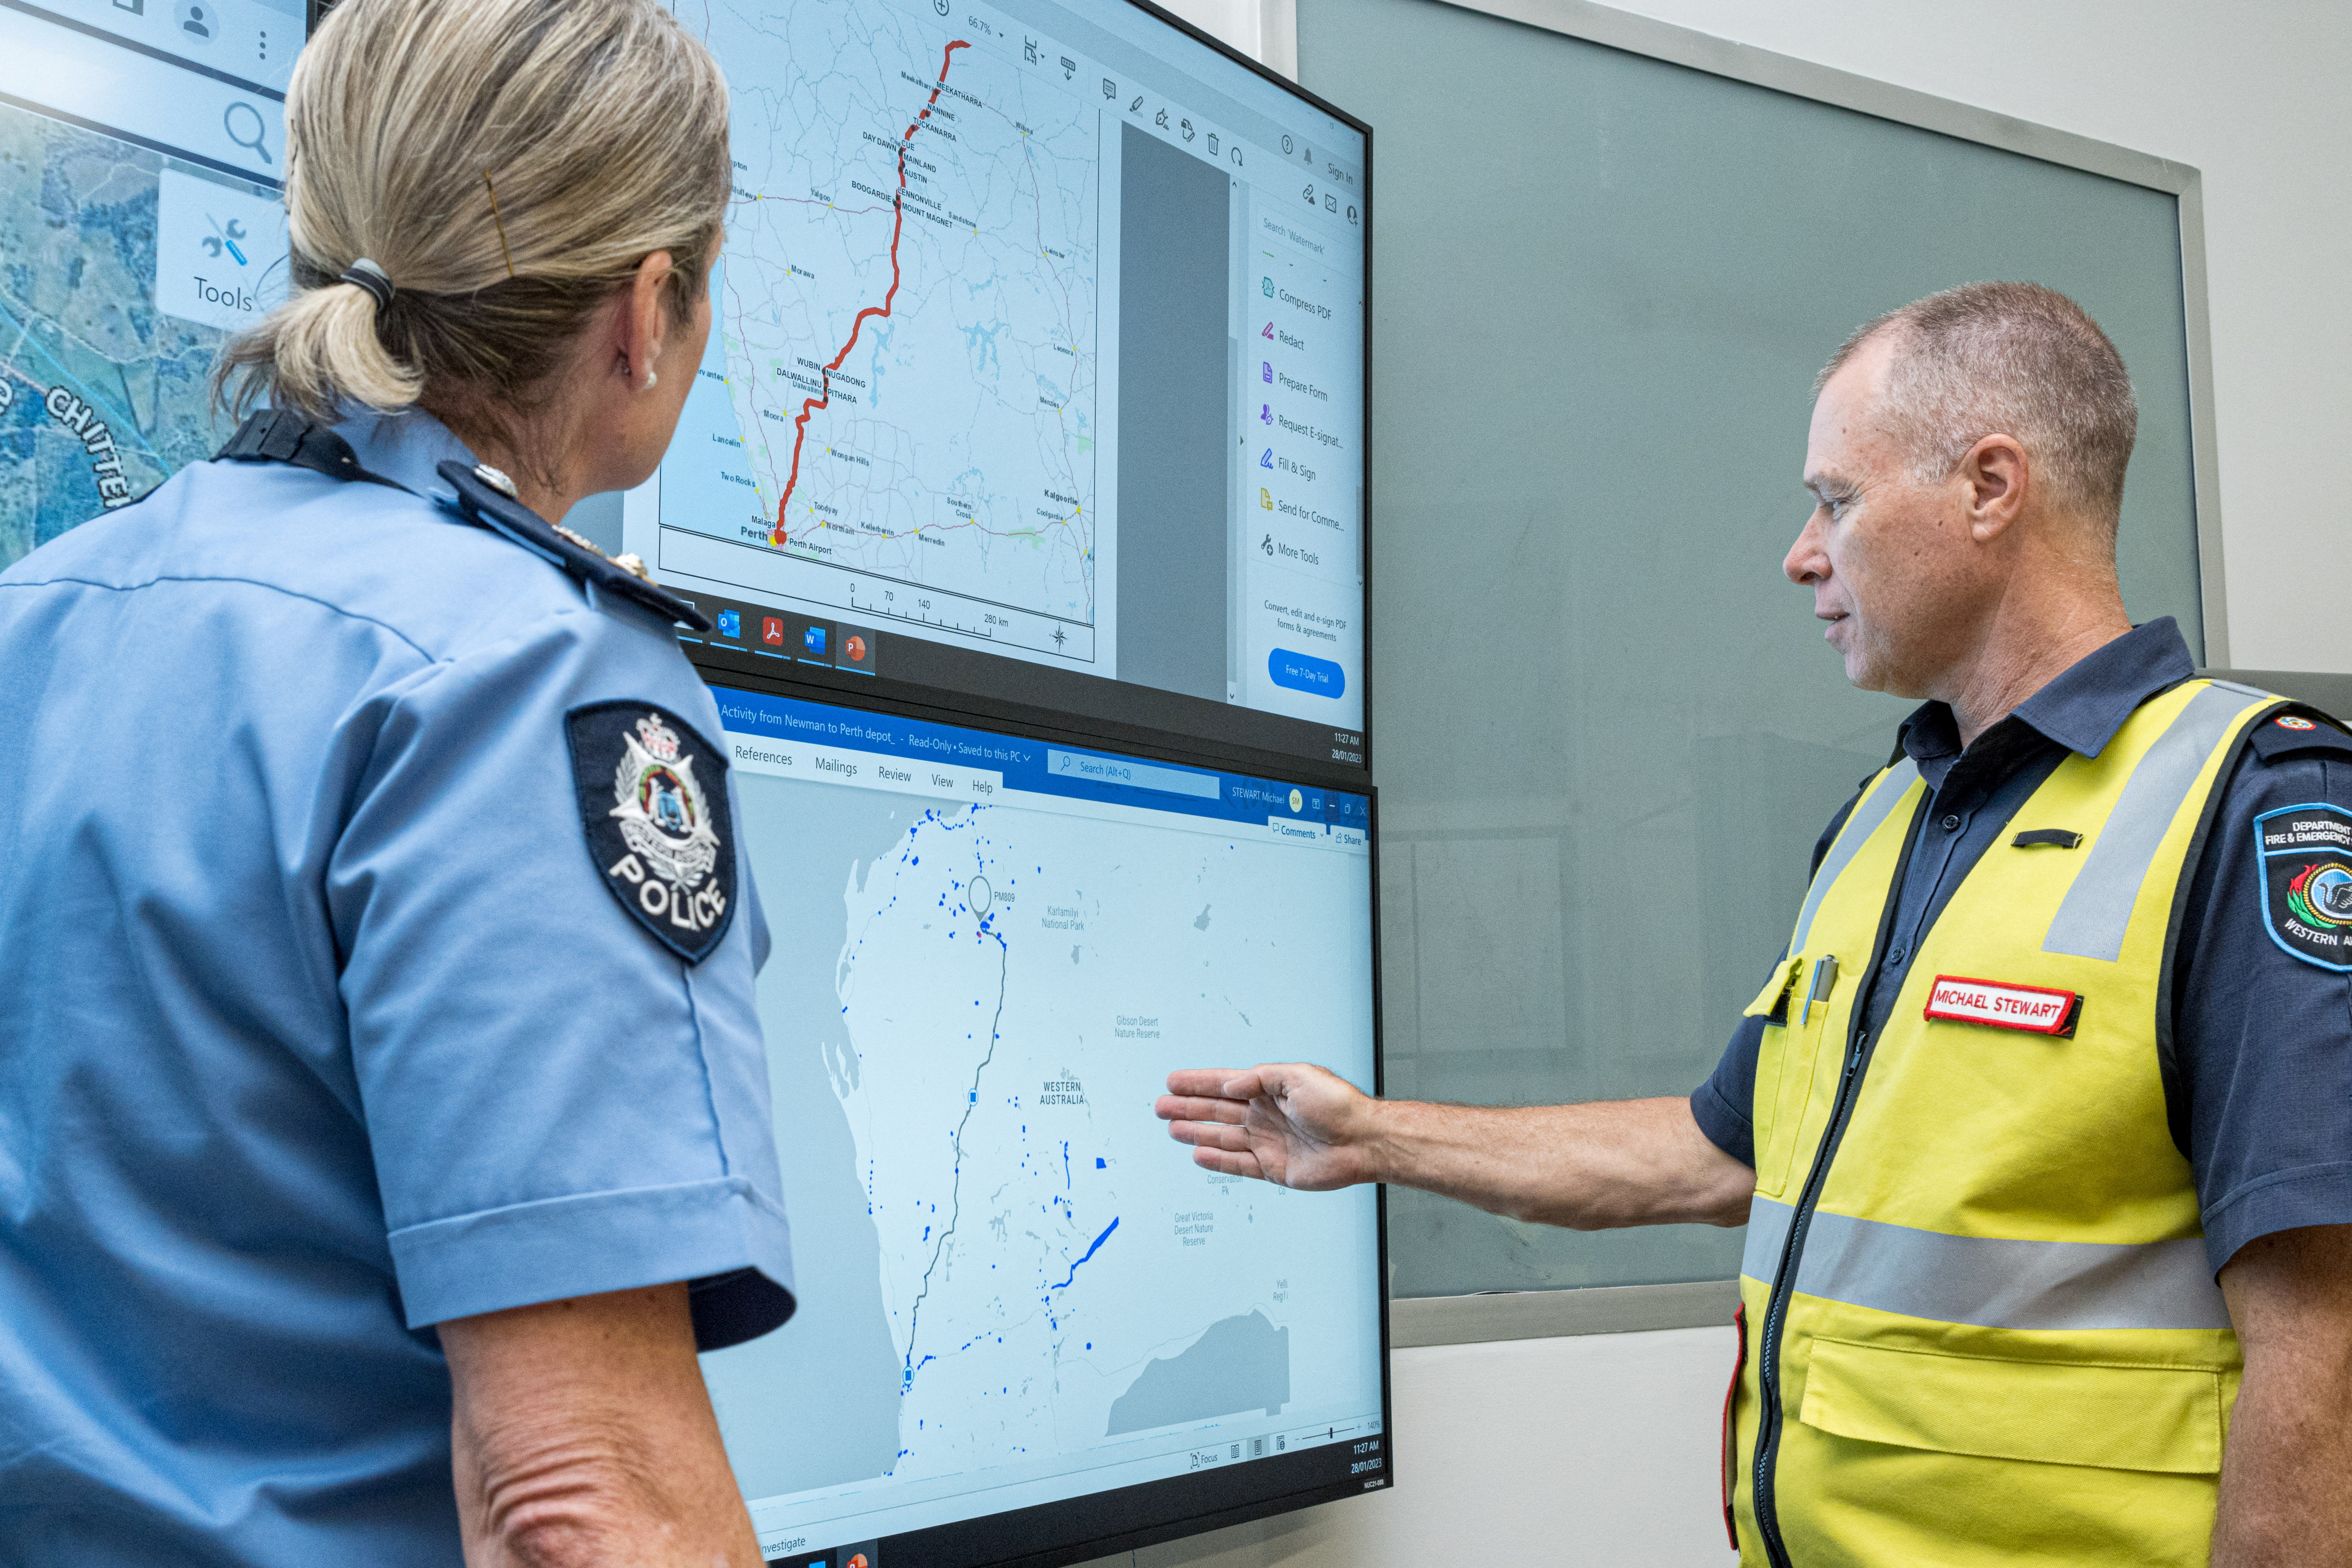 El centro de búsqueda se instaló en el Complejo de Servicios de Emergencia de Cockburn, Australia (Department of Fire and Emergency Services/Handout via REUTERS)